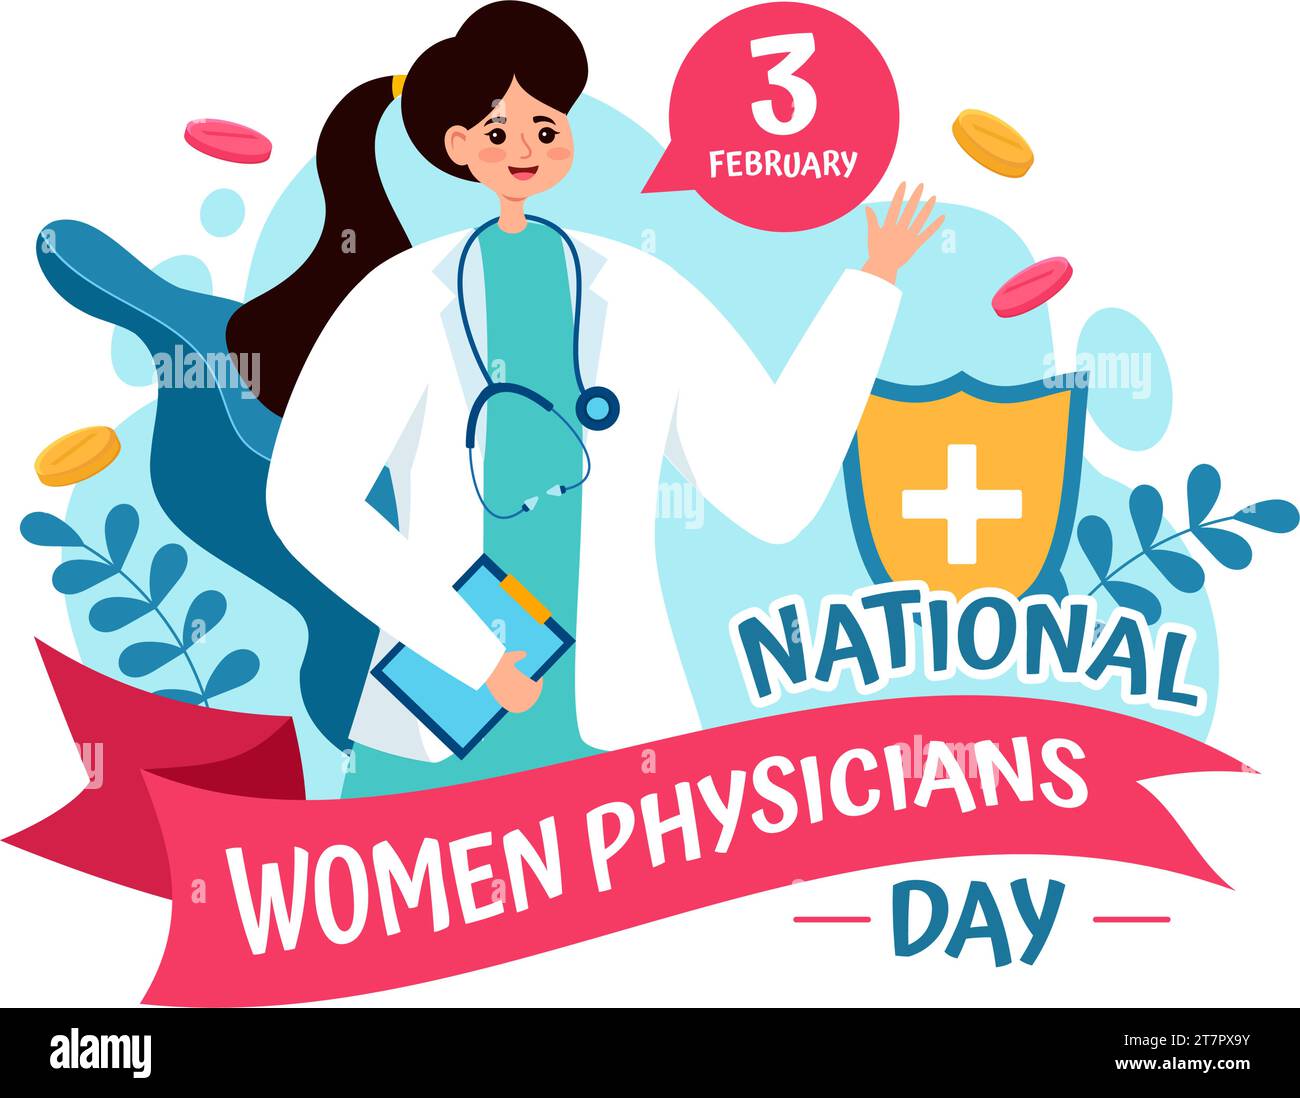 Illustration vectorielle de la Journée nationale des femmes médecins le 3 février pour honorer les médecins féminins à travers le pays dans la conception de fond de dessin animé plat Illustration de Vecteur